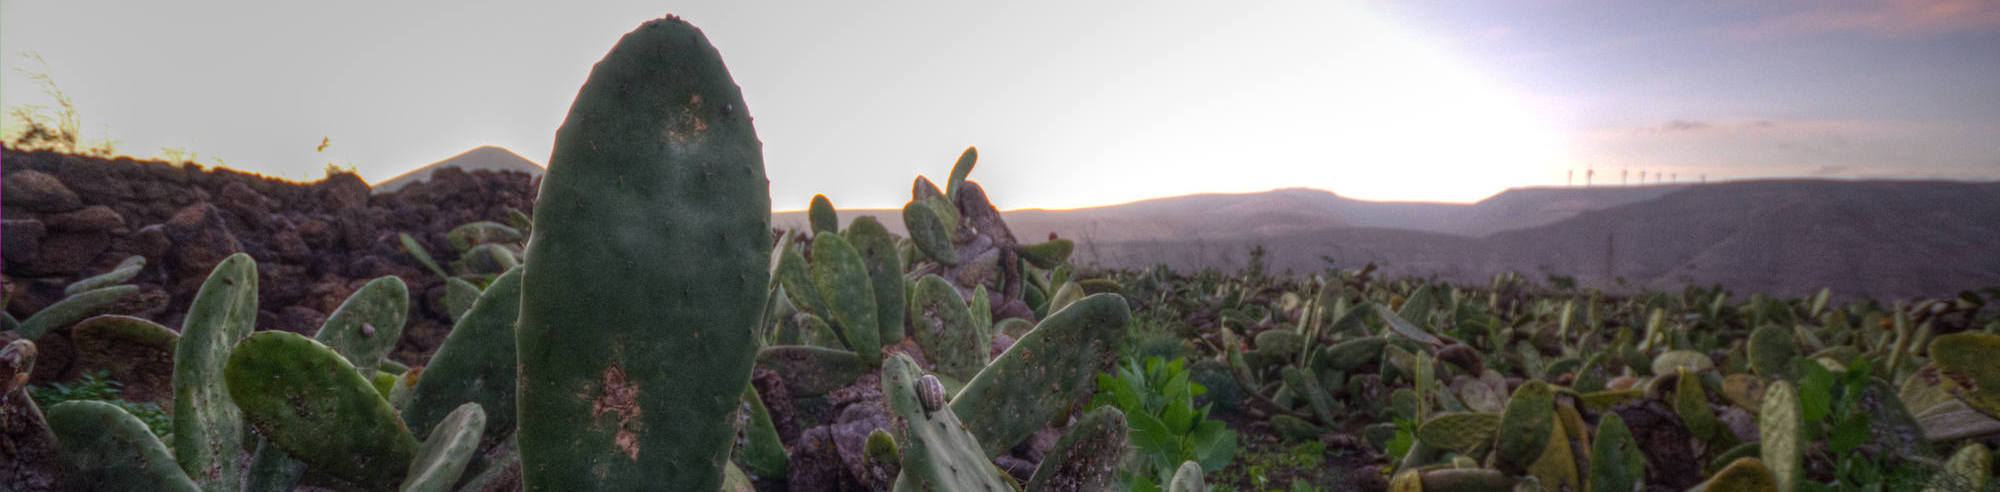 Jardin De Cactus Mogroach Lanzarote